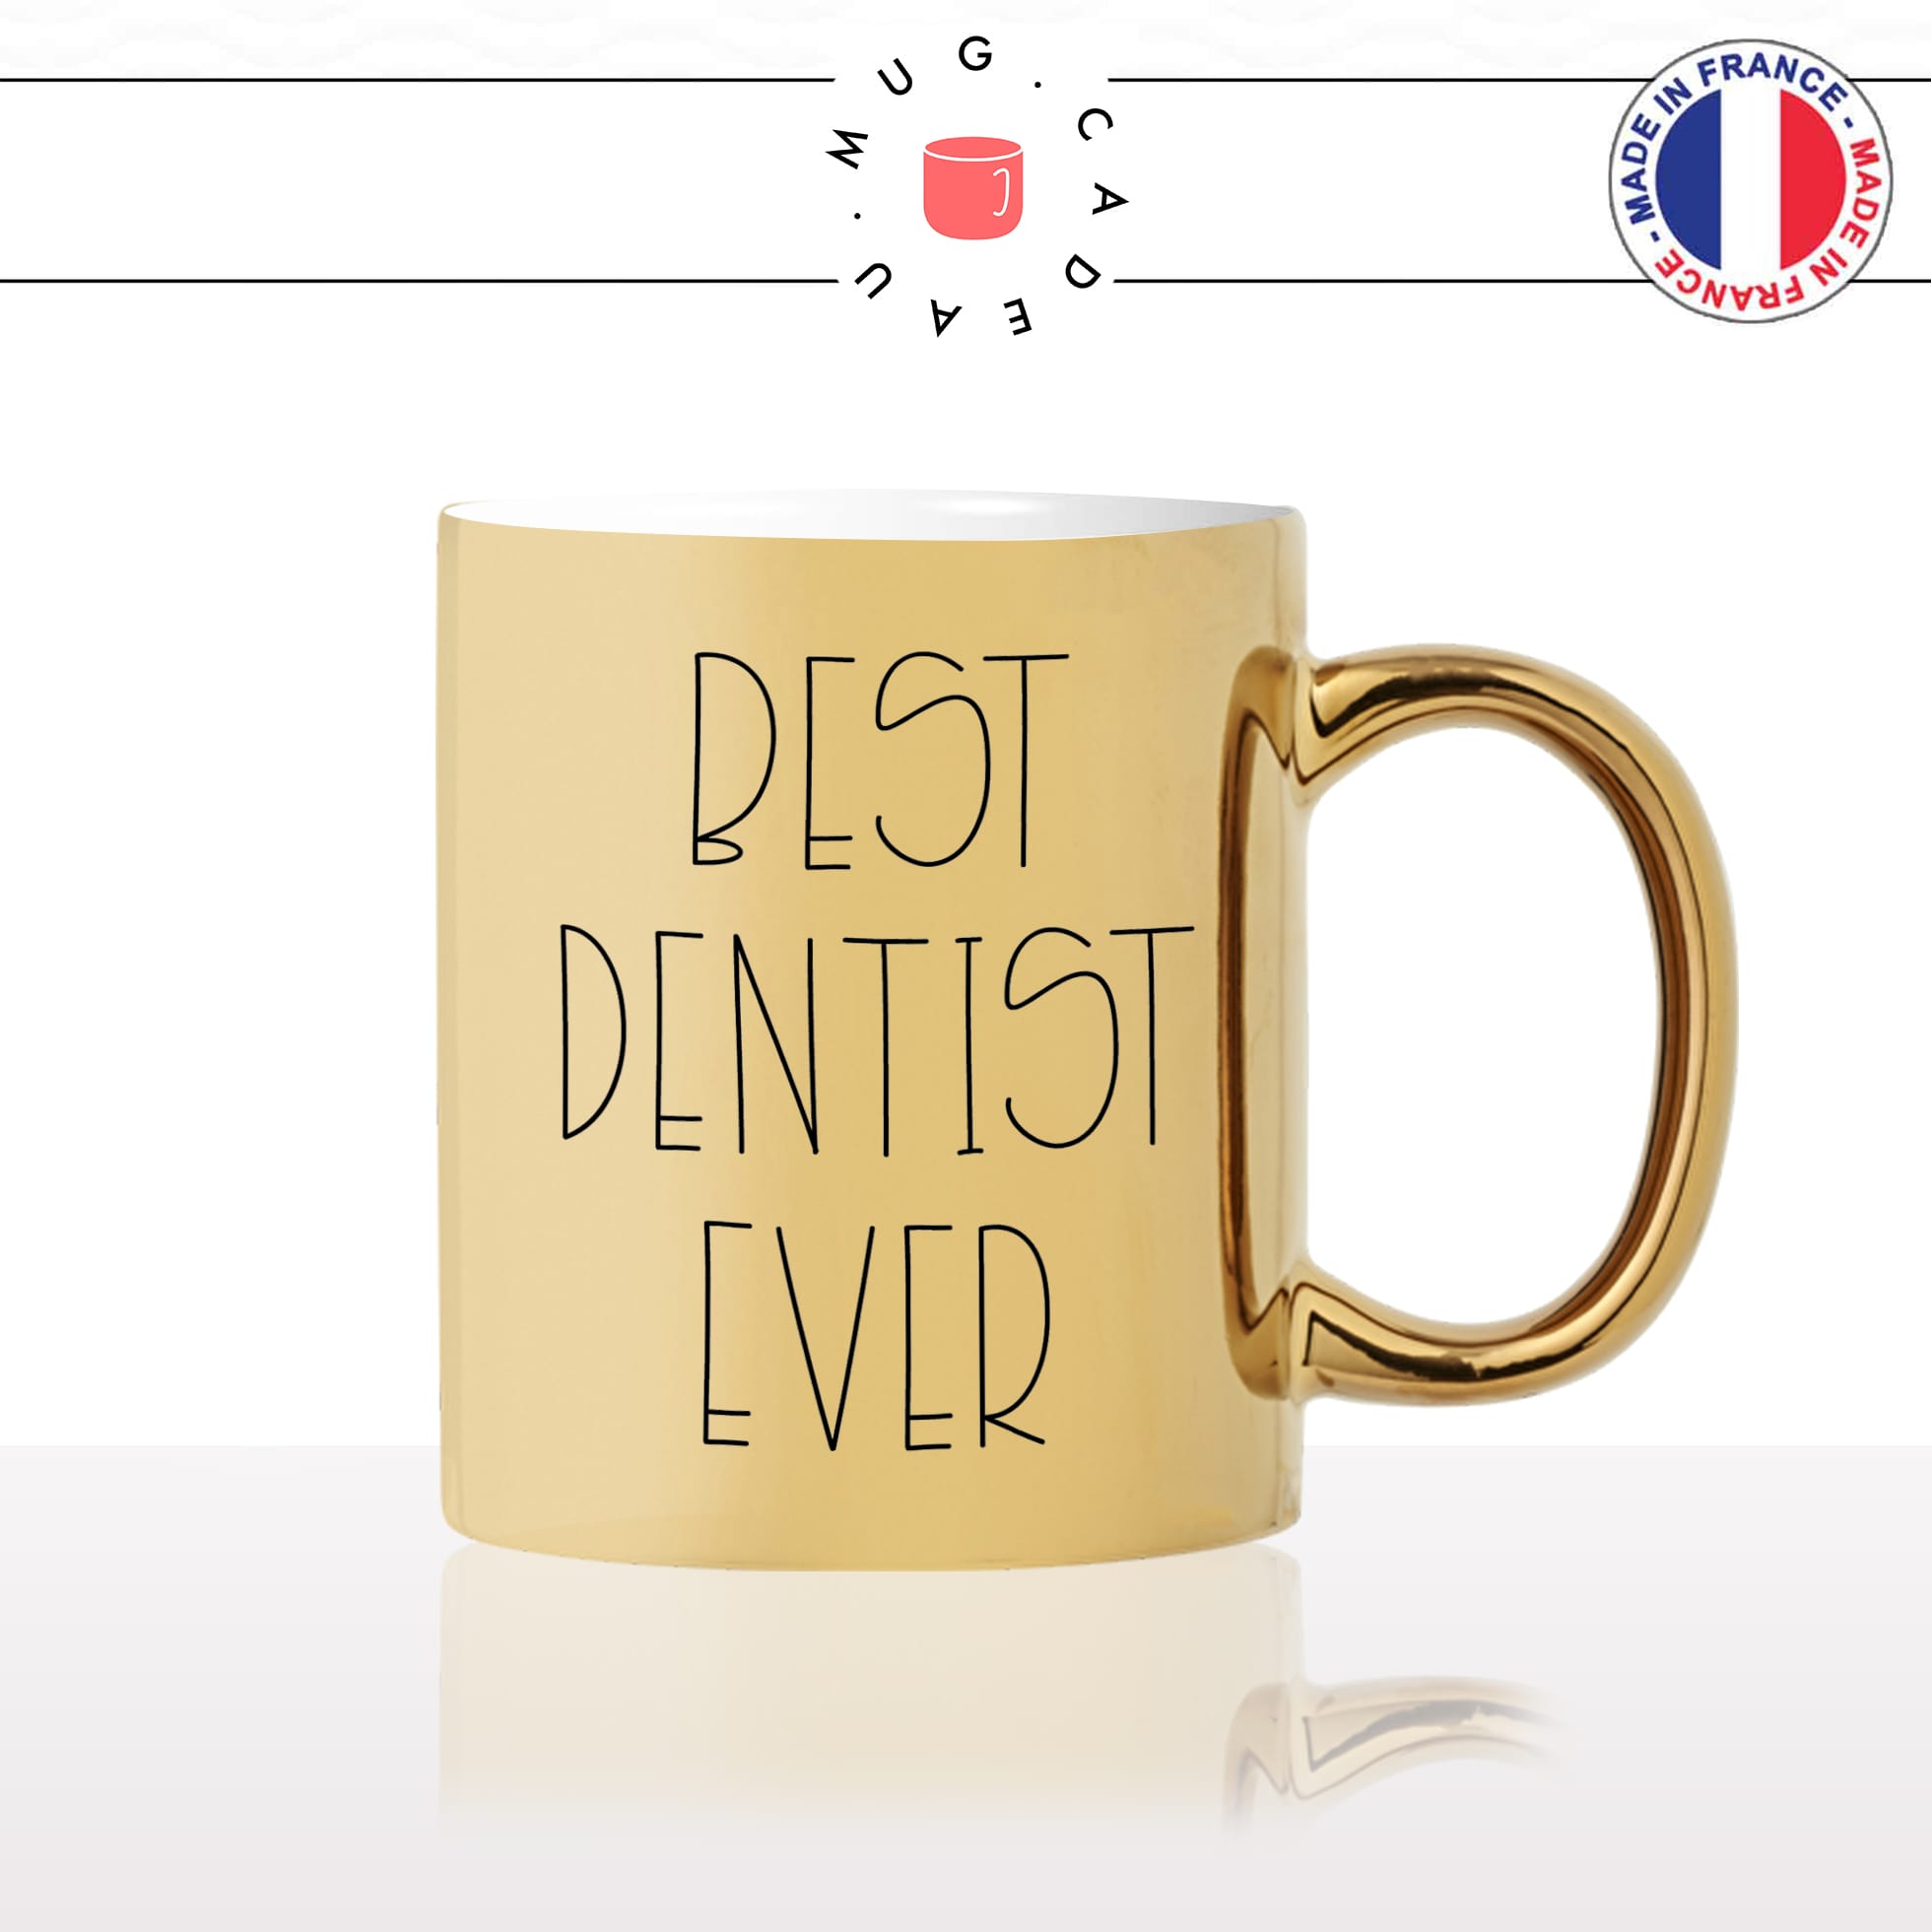 mug-tasse-or-gold-doré-dentiste-best-dentist-ever-meilleur-médecin-dents-dentier-carrie-métier-personnalisé-fun-idée-cadeau-café-thé2-min